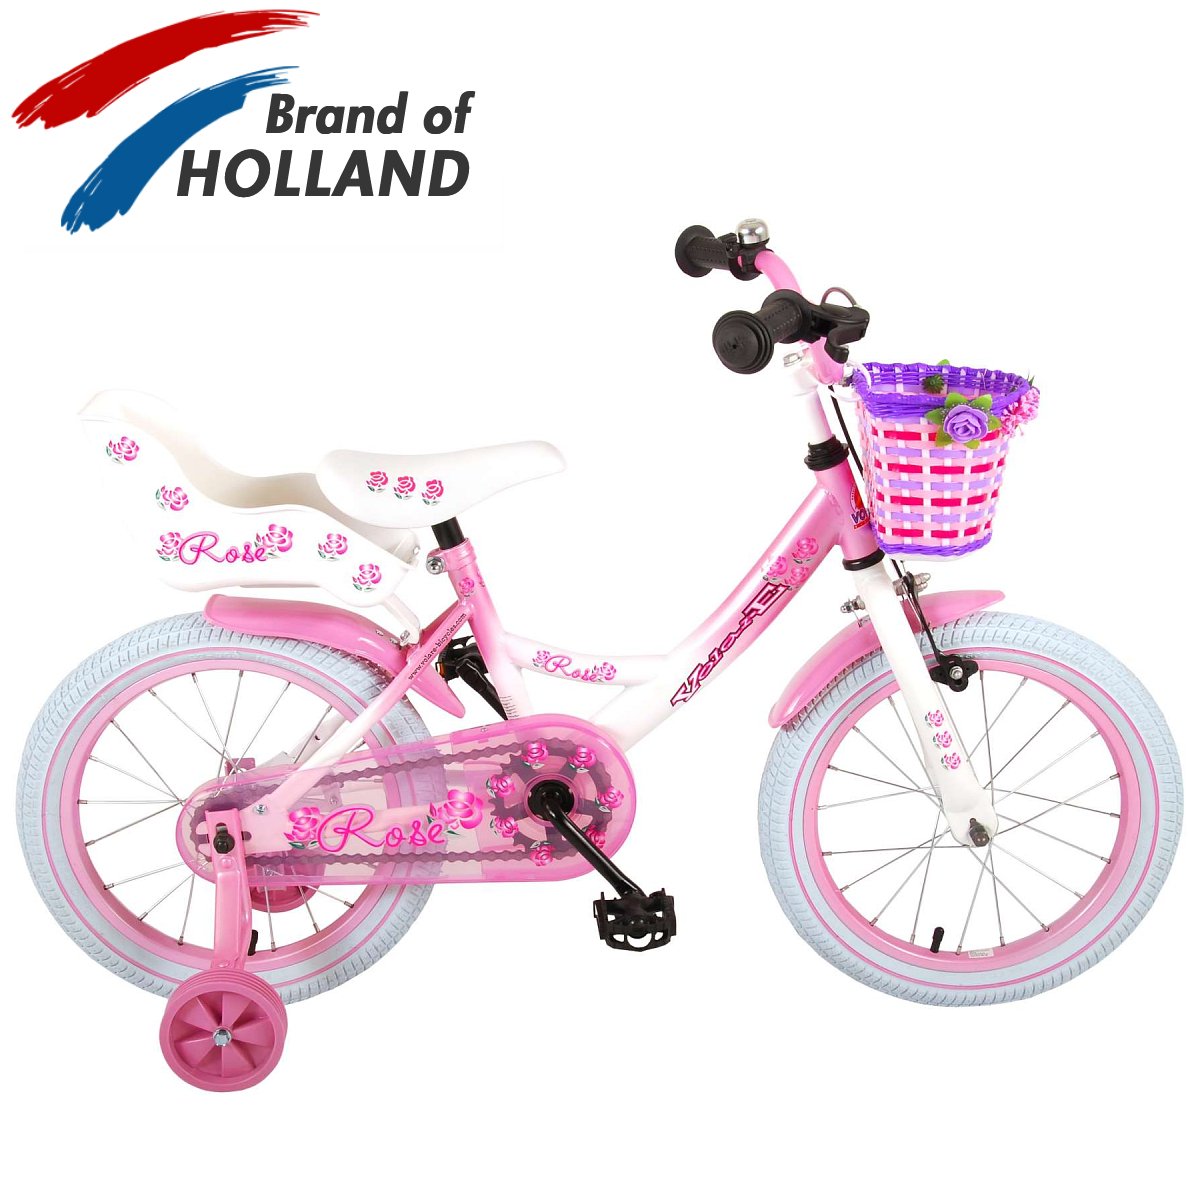 Vaikiškas dviratis VOLARE 16" Rose (81611) rožinis/baltas